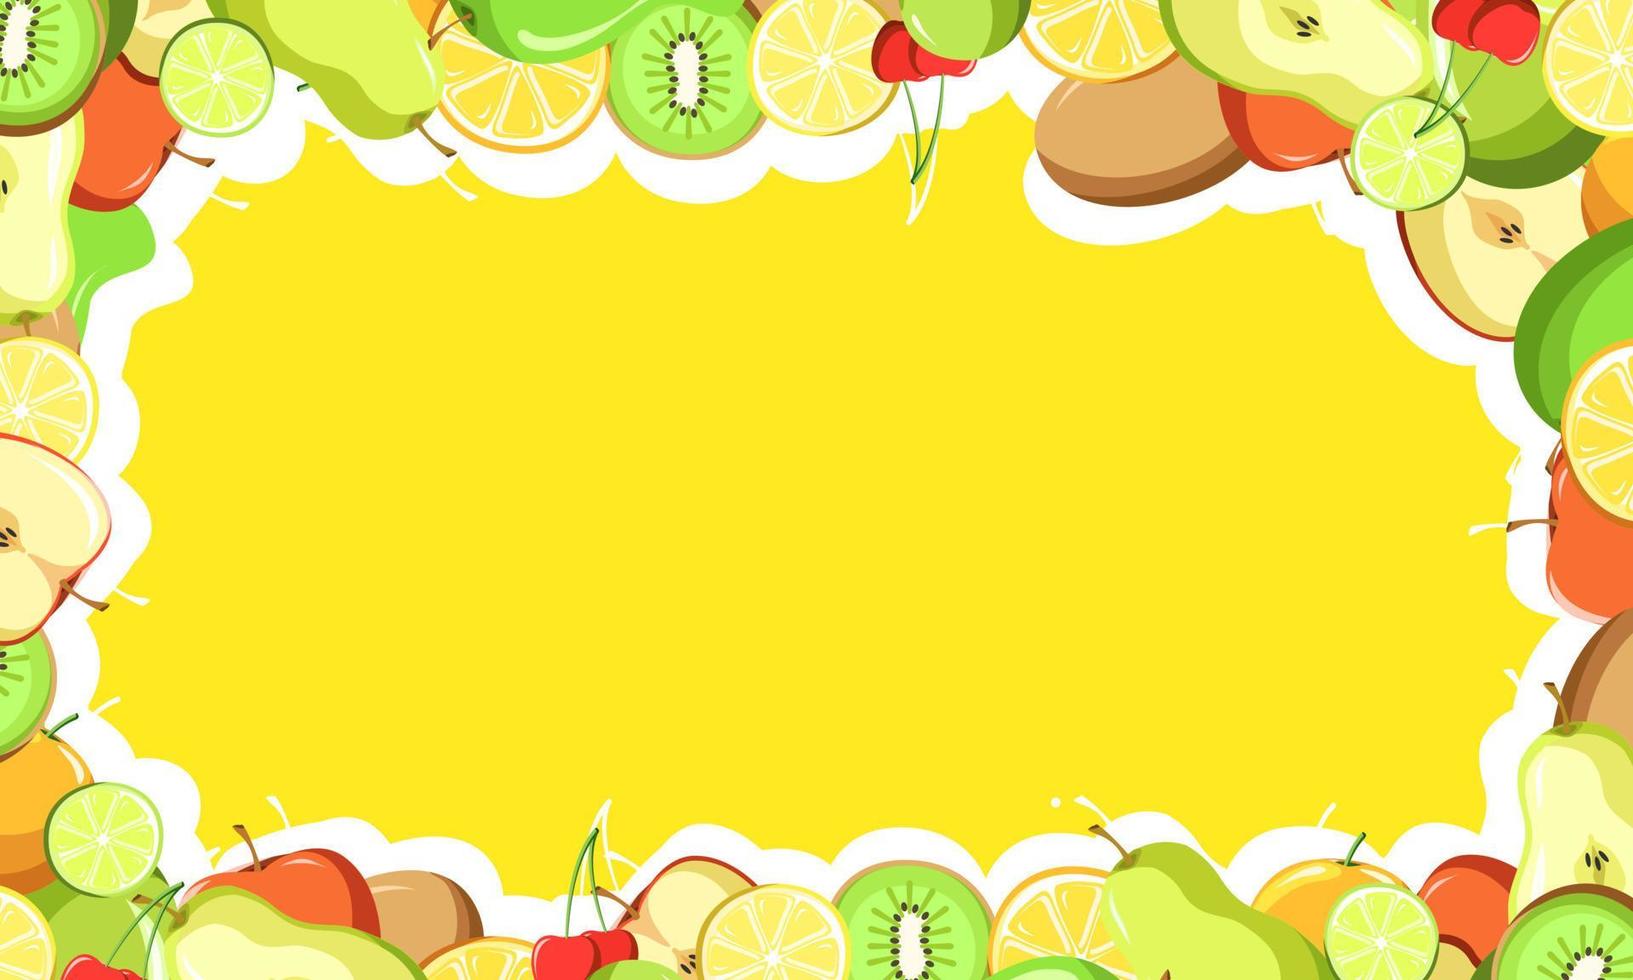 Fruit pattern vector illustration background